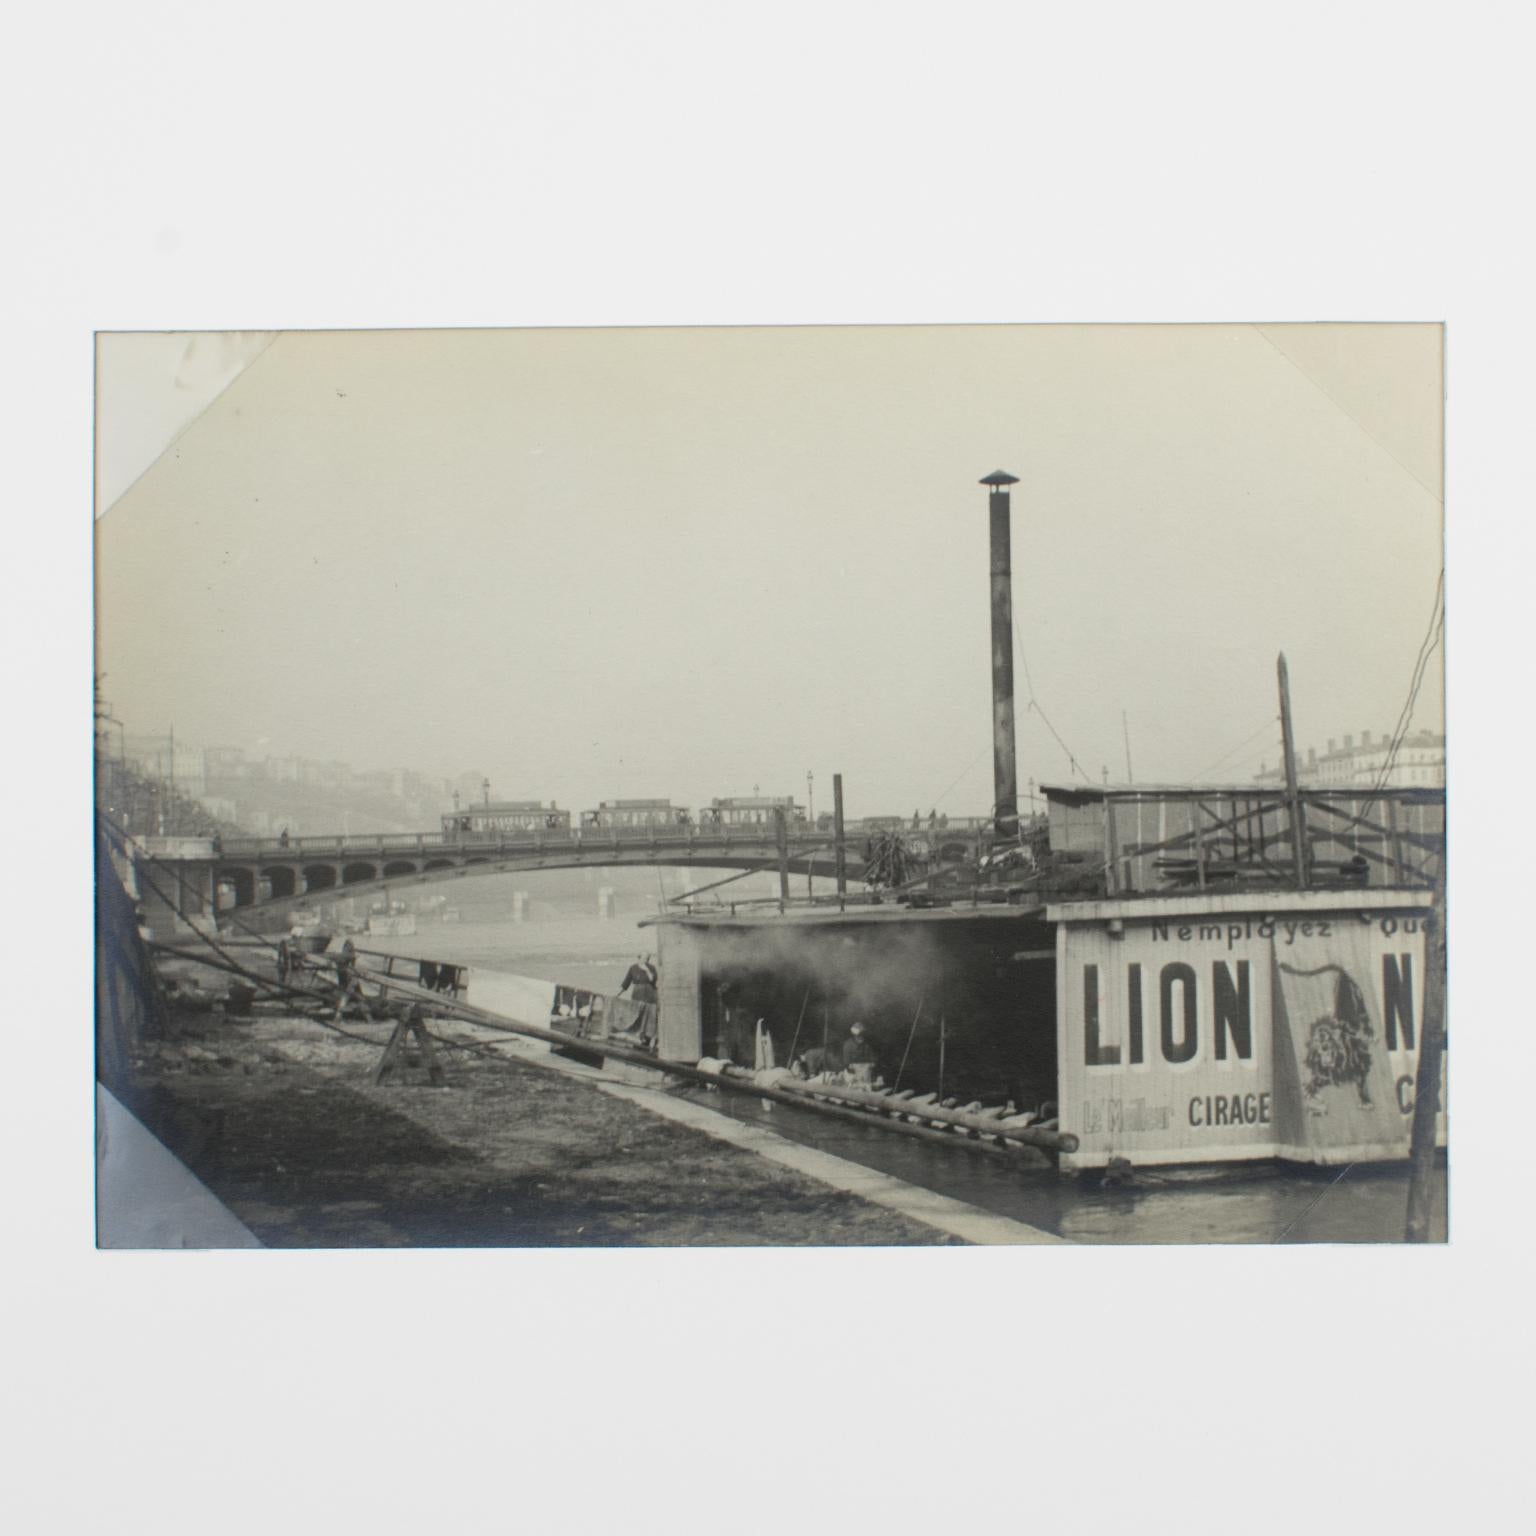 Le fleuve Rhone à Lyon, France 1927, photographie en gélatine argentique noire et blanche - Photograph de Press Agency